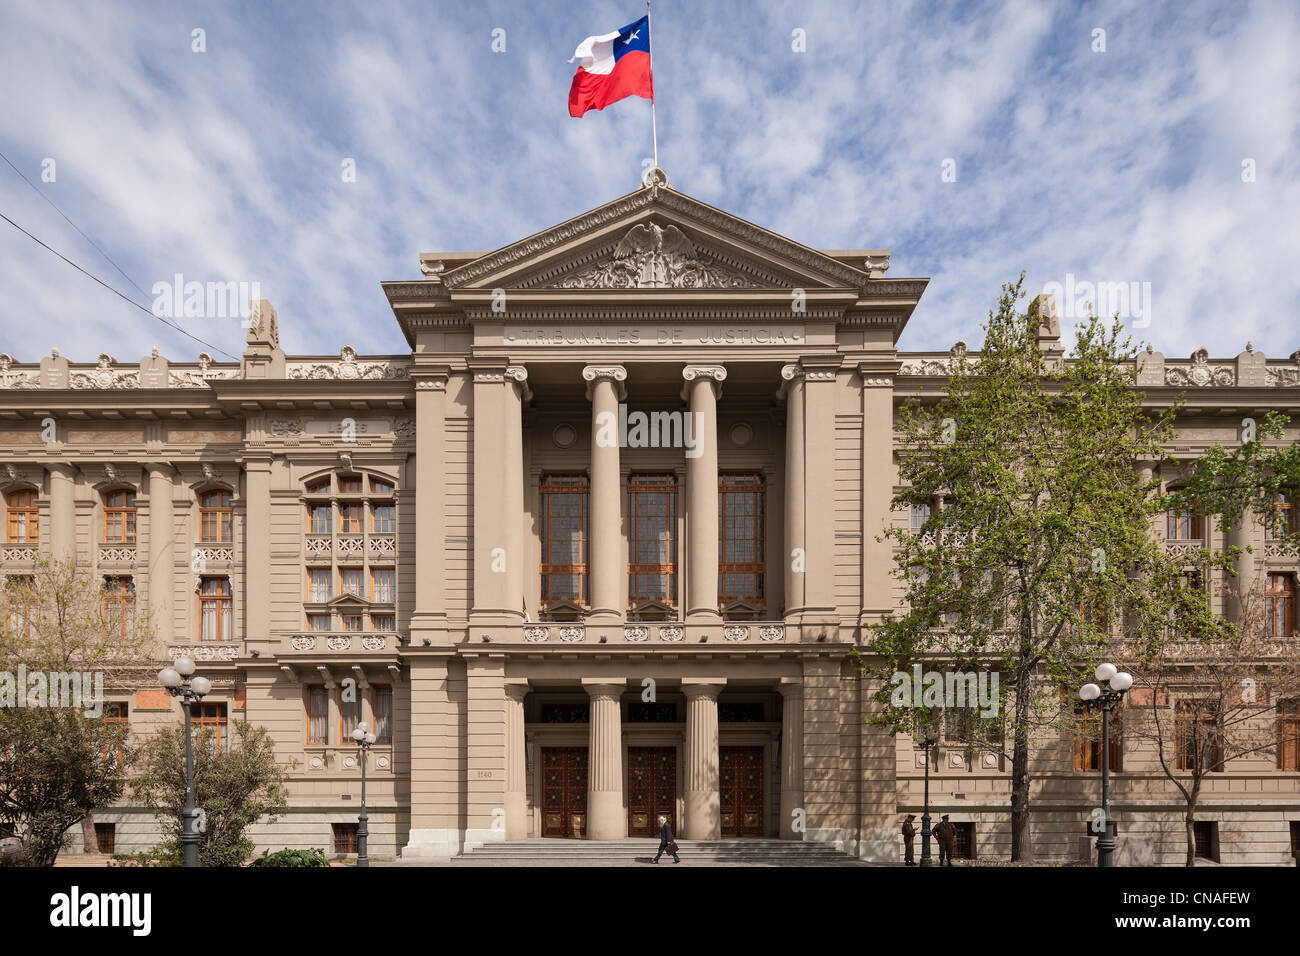 Bâtiment de la Cour suprême chilienne ; Palais de Justice ; tribunales de justicia, à Santiago de Chile Banque D'Images